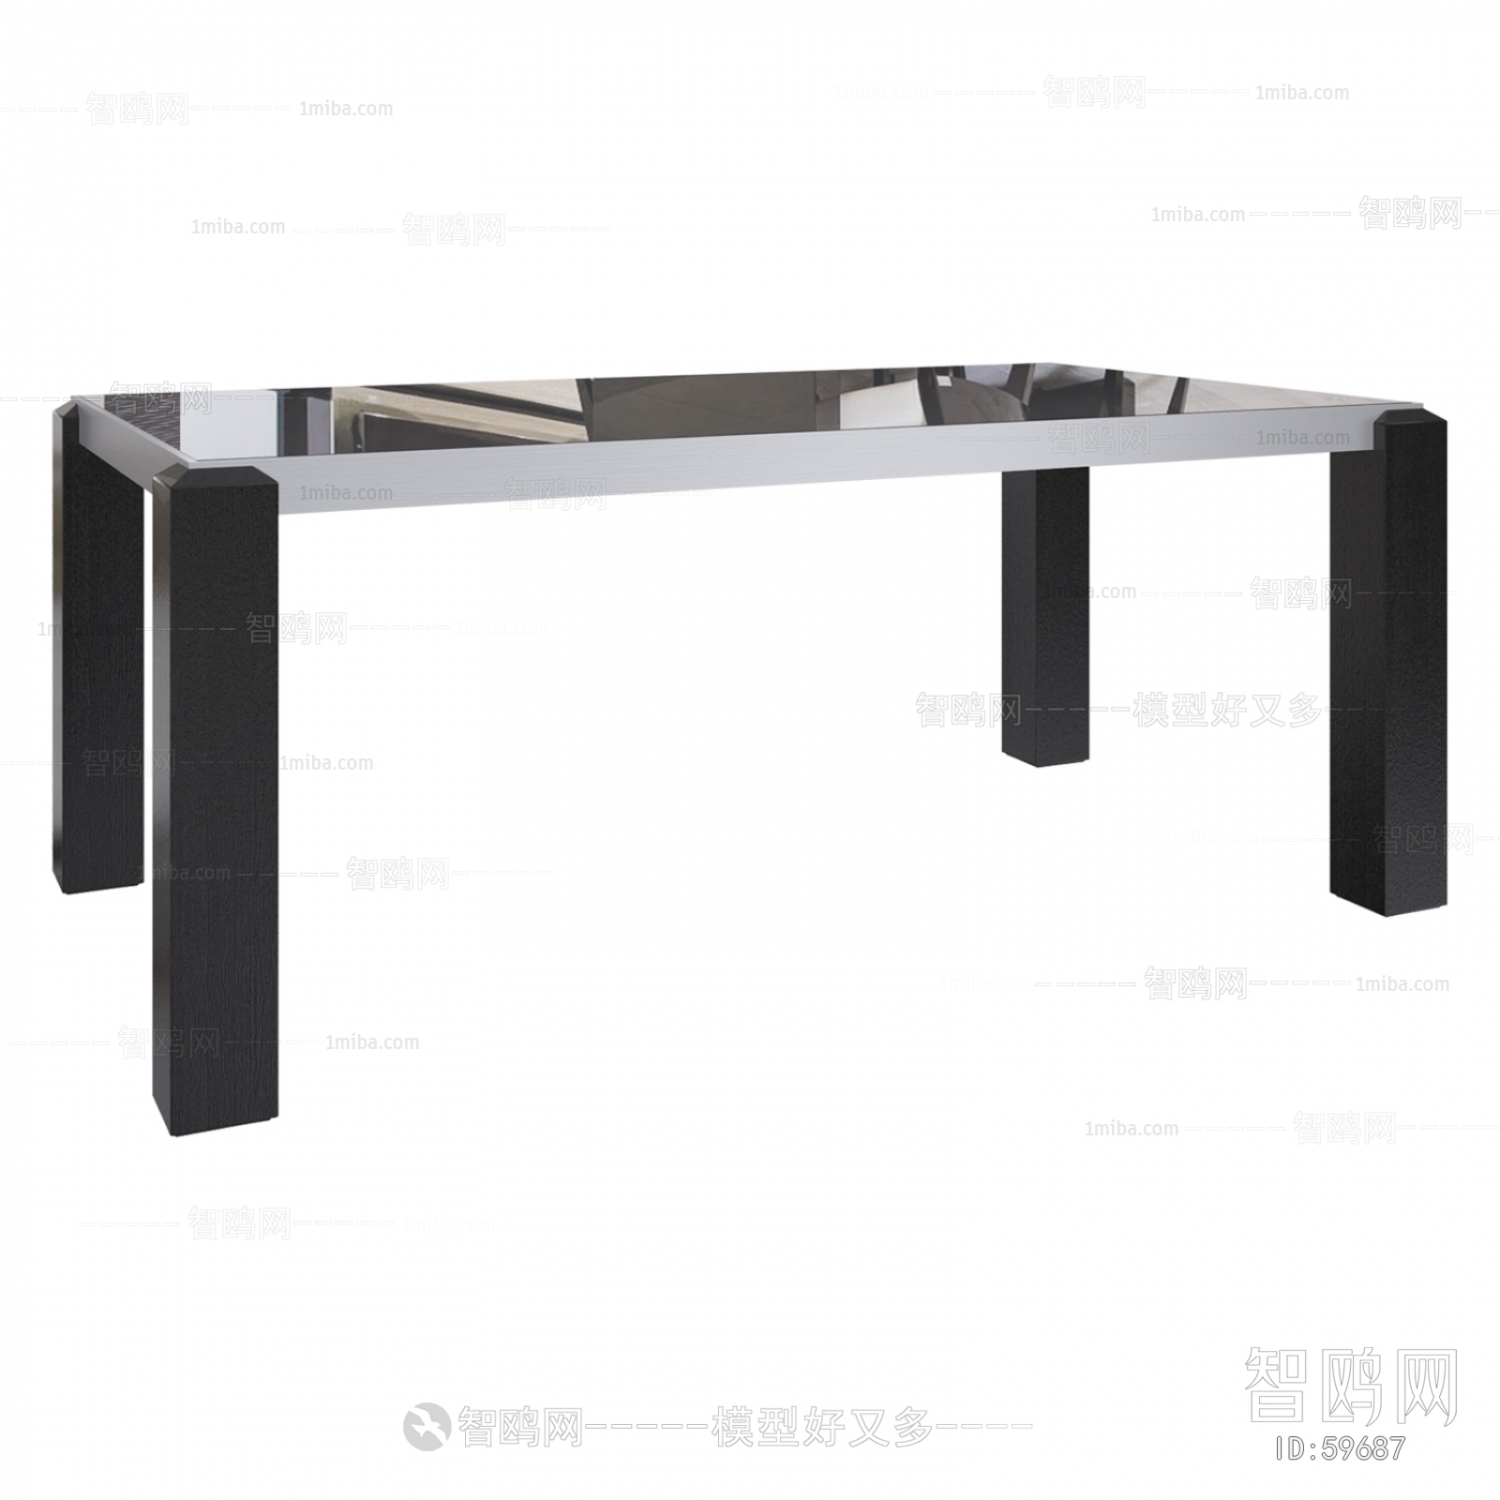 Modern Table